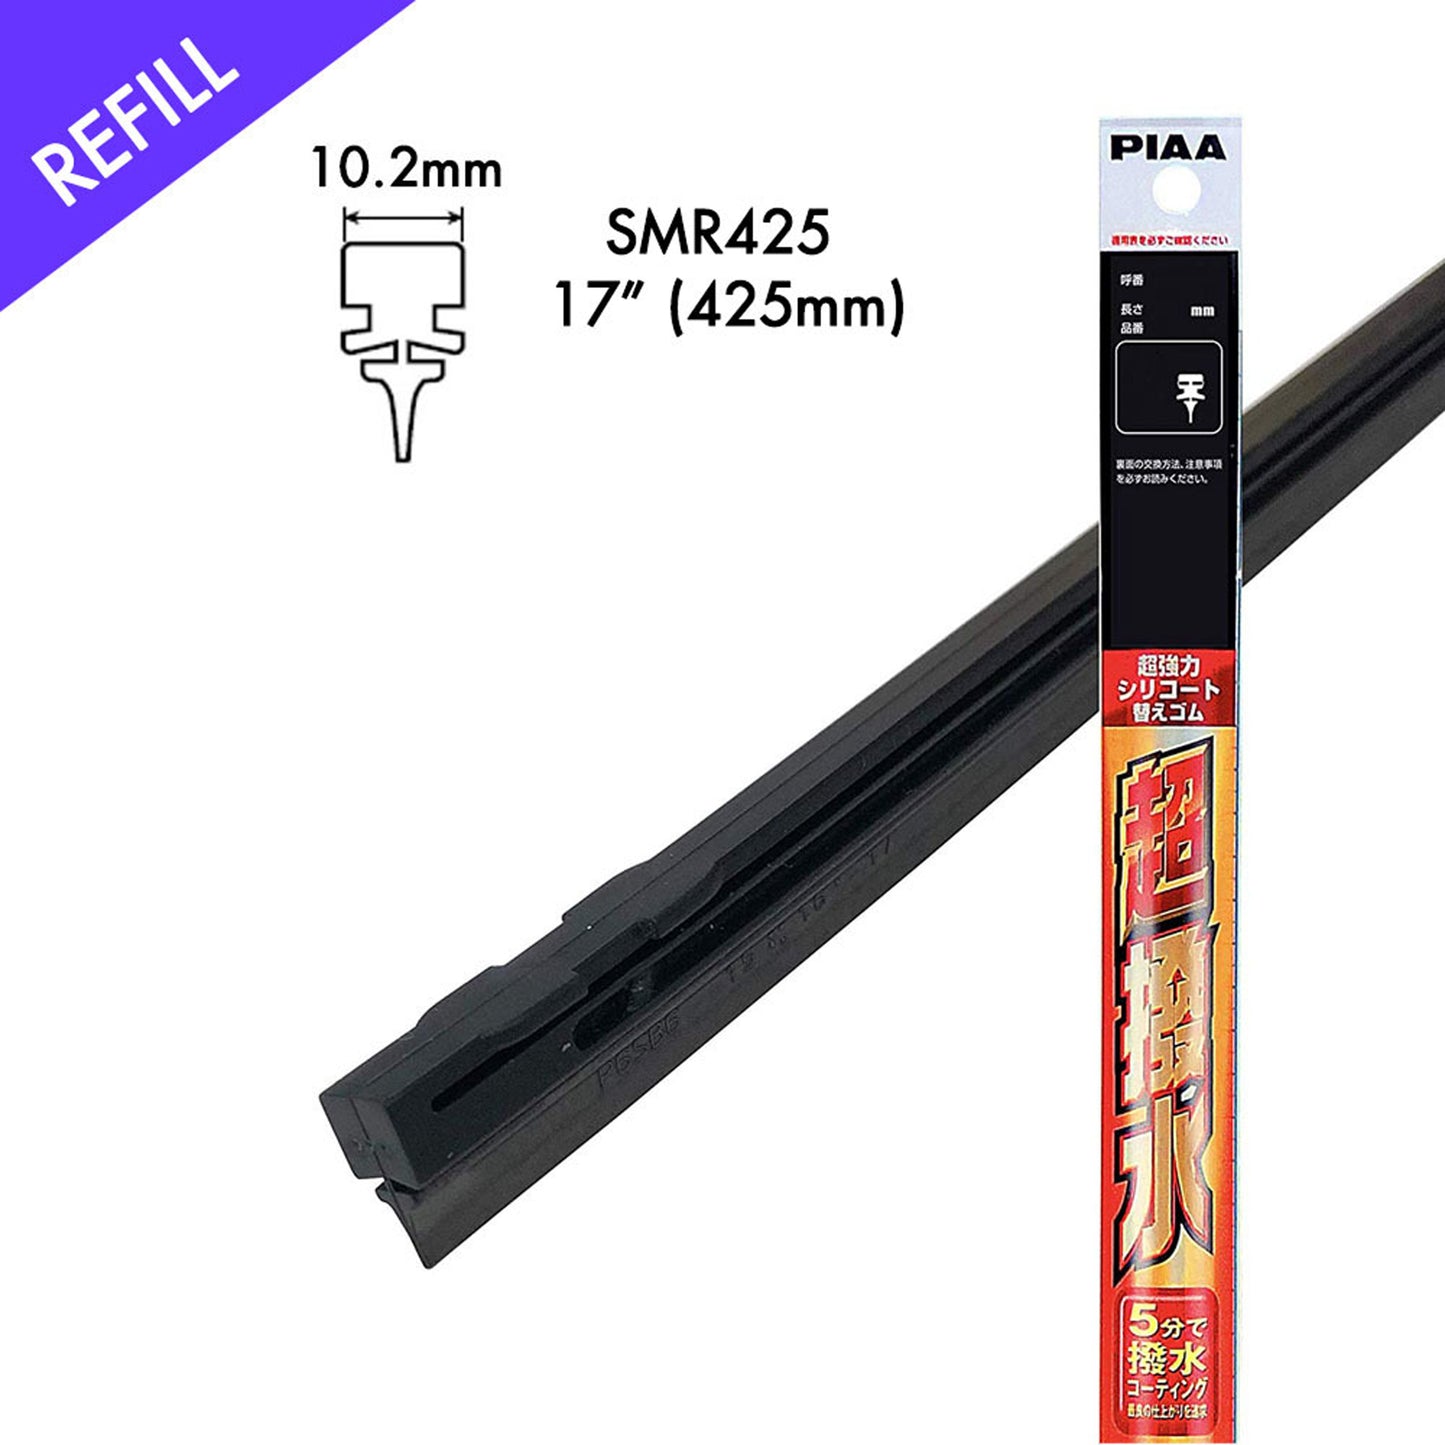 PIAA Silicone Wiper Refill for Uniblade ( 17" ) (Barcode: 4960311023654 )